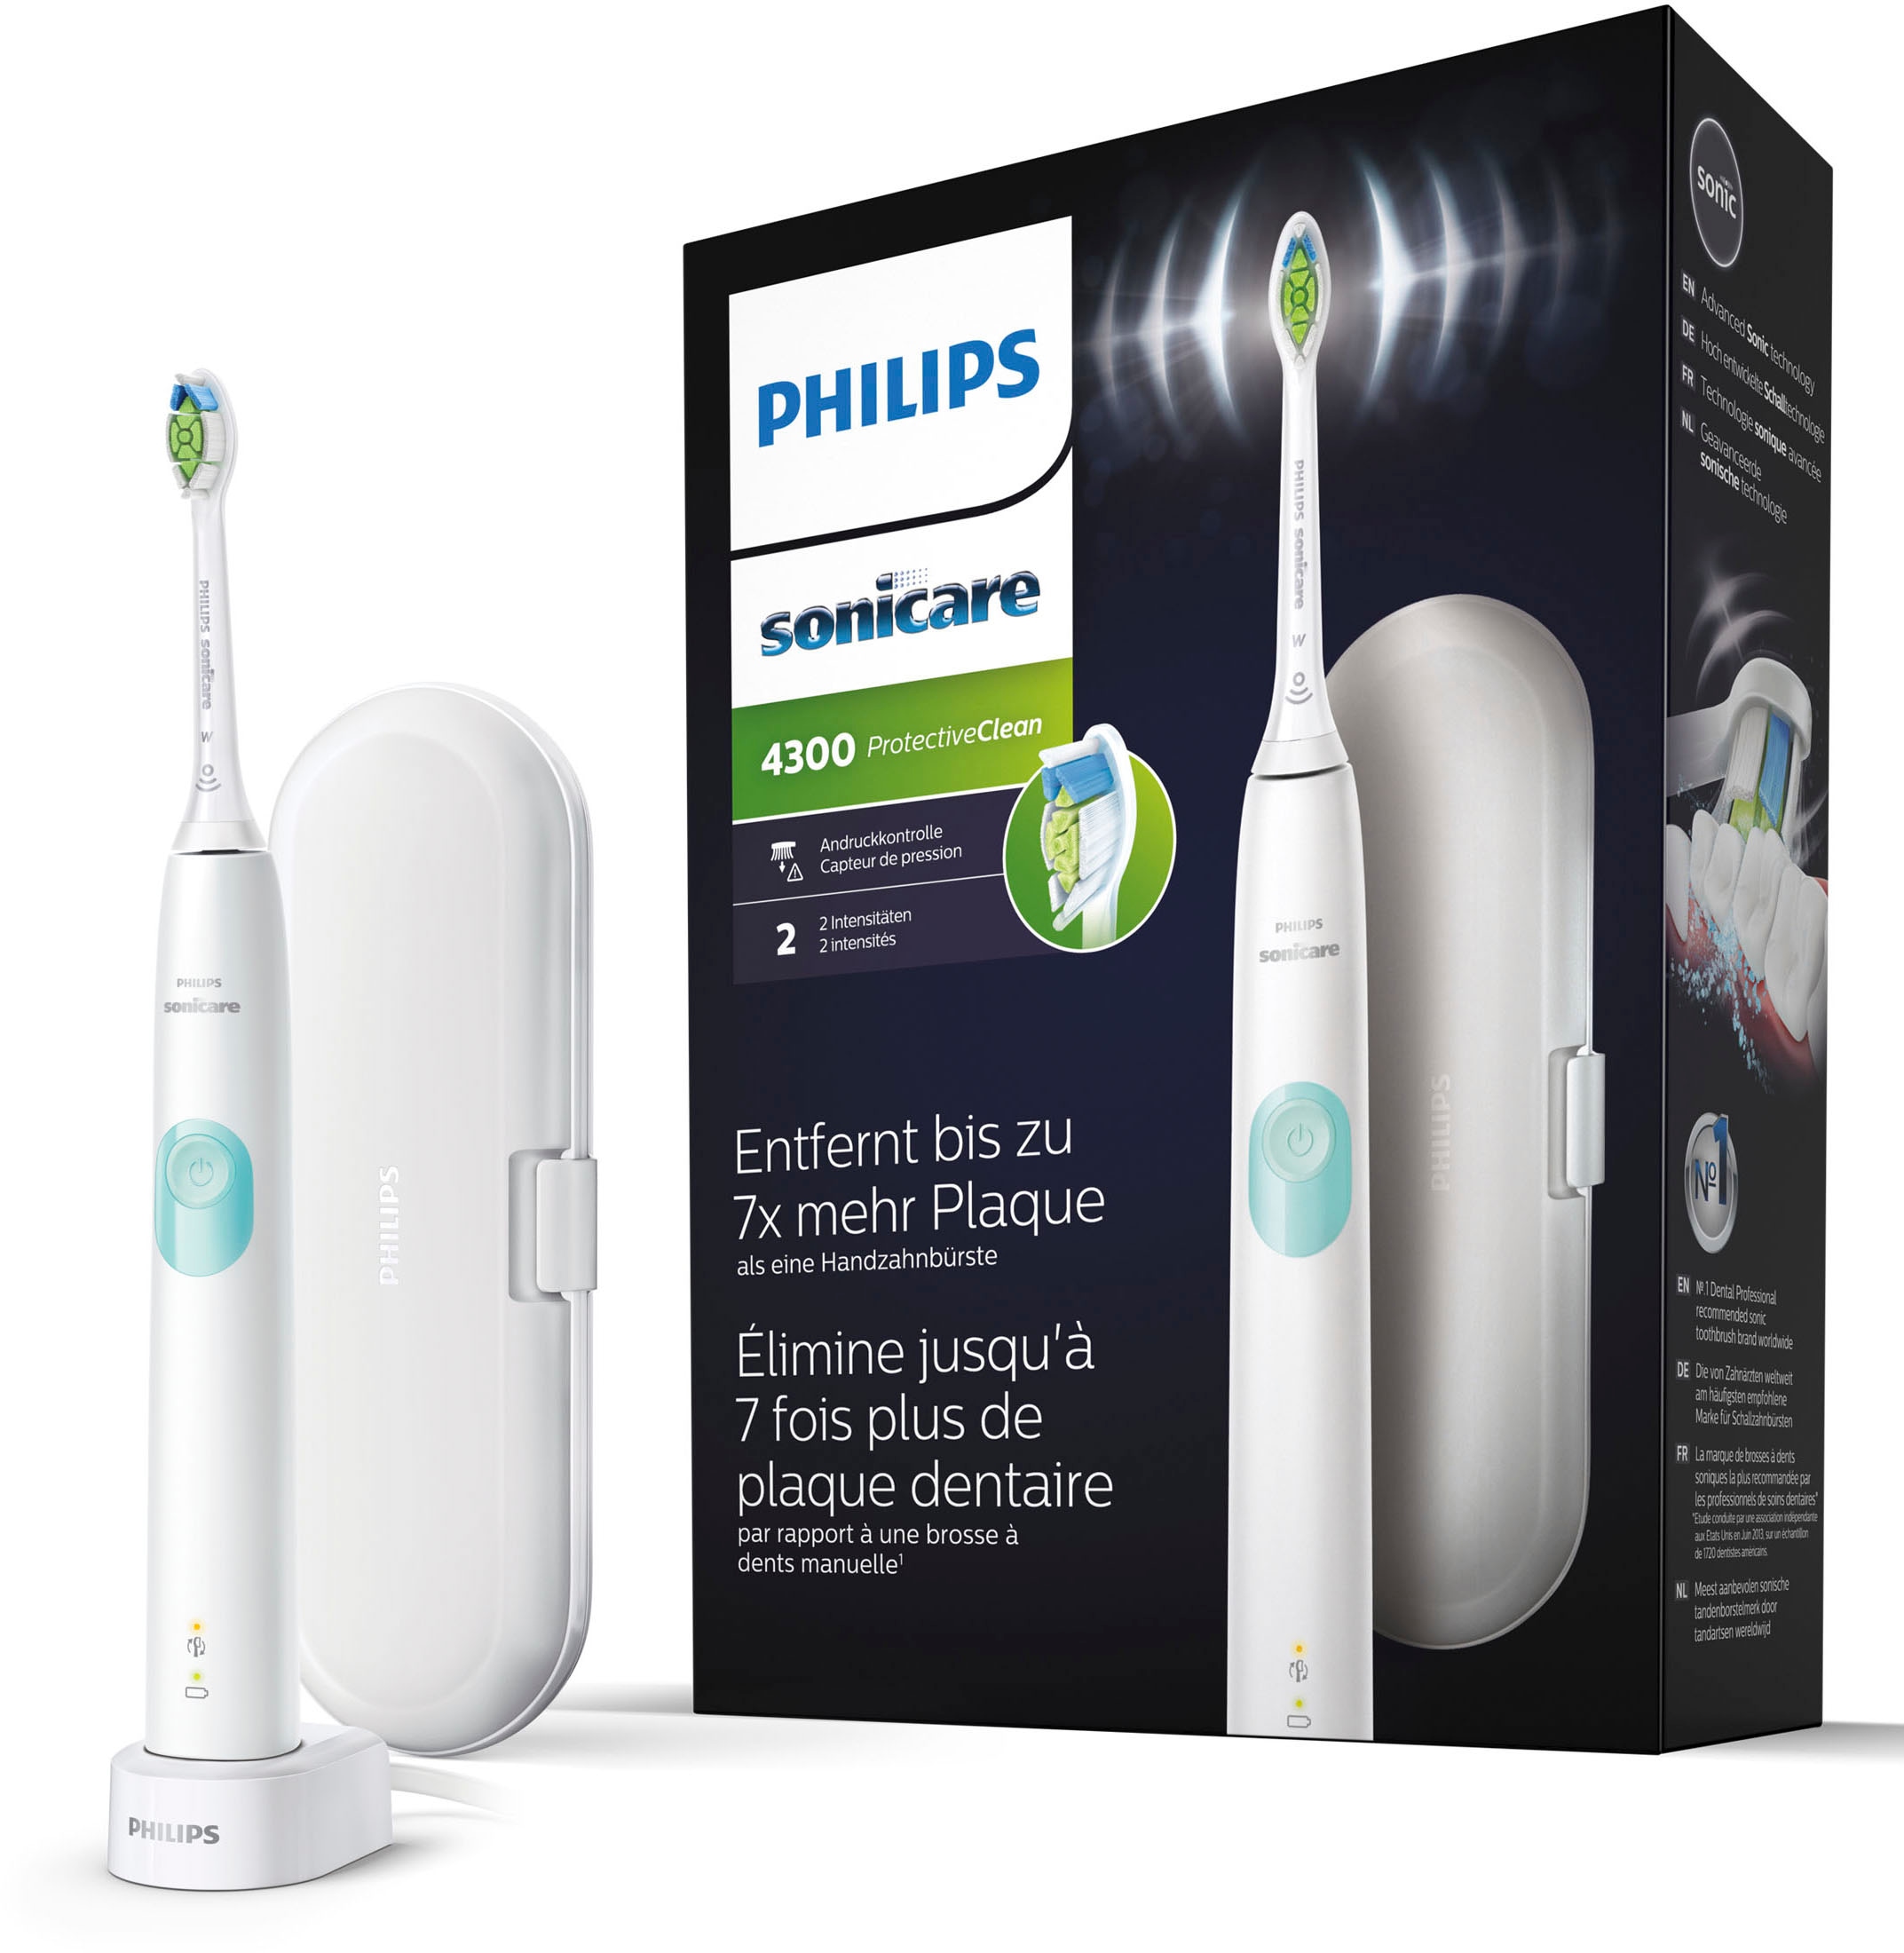 Philips Sonicare Elektrische Zahnbürste »ProtectiveClean 4300 HX6807/28«, 1 St. Aufsteckbürsten, mit Schalltechnologie und BrushSync Funktion, Ladestation, Reiseetui